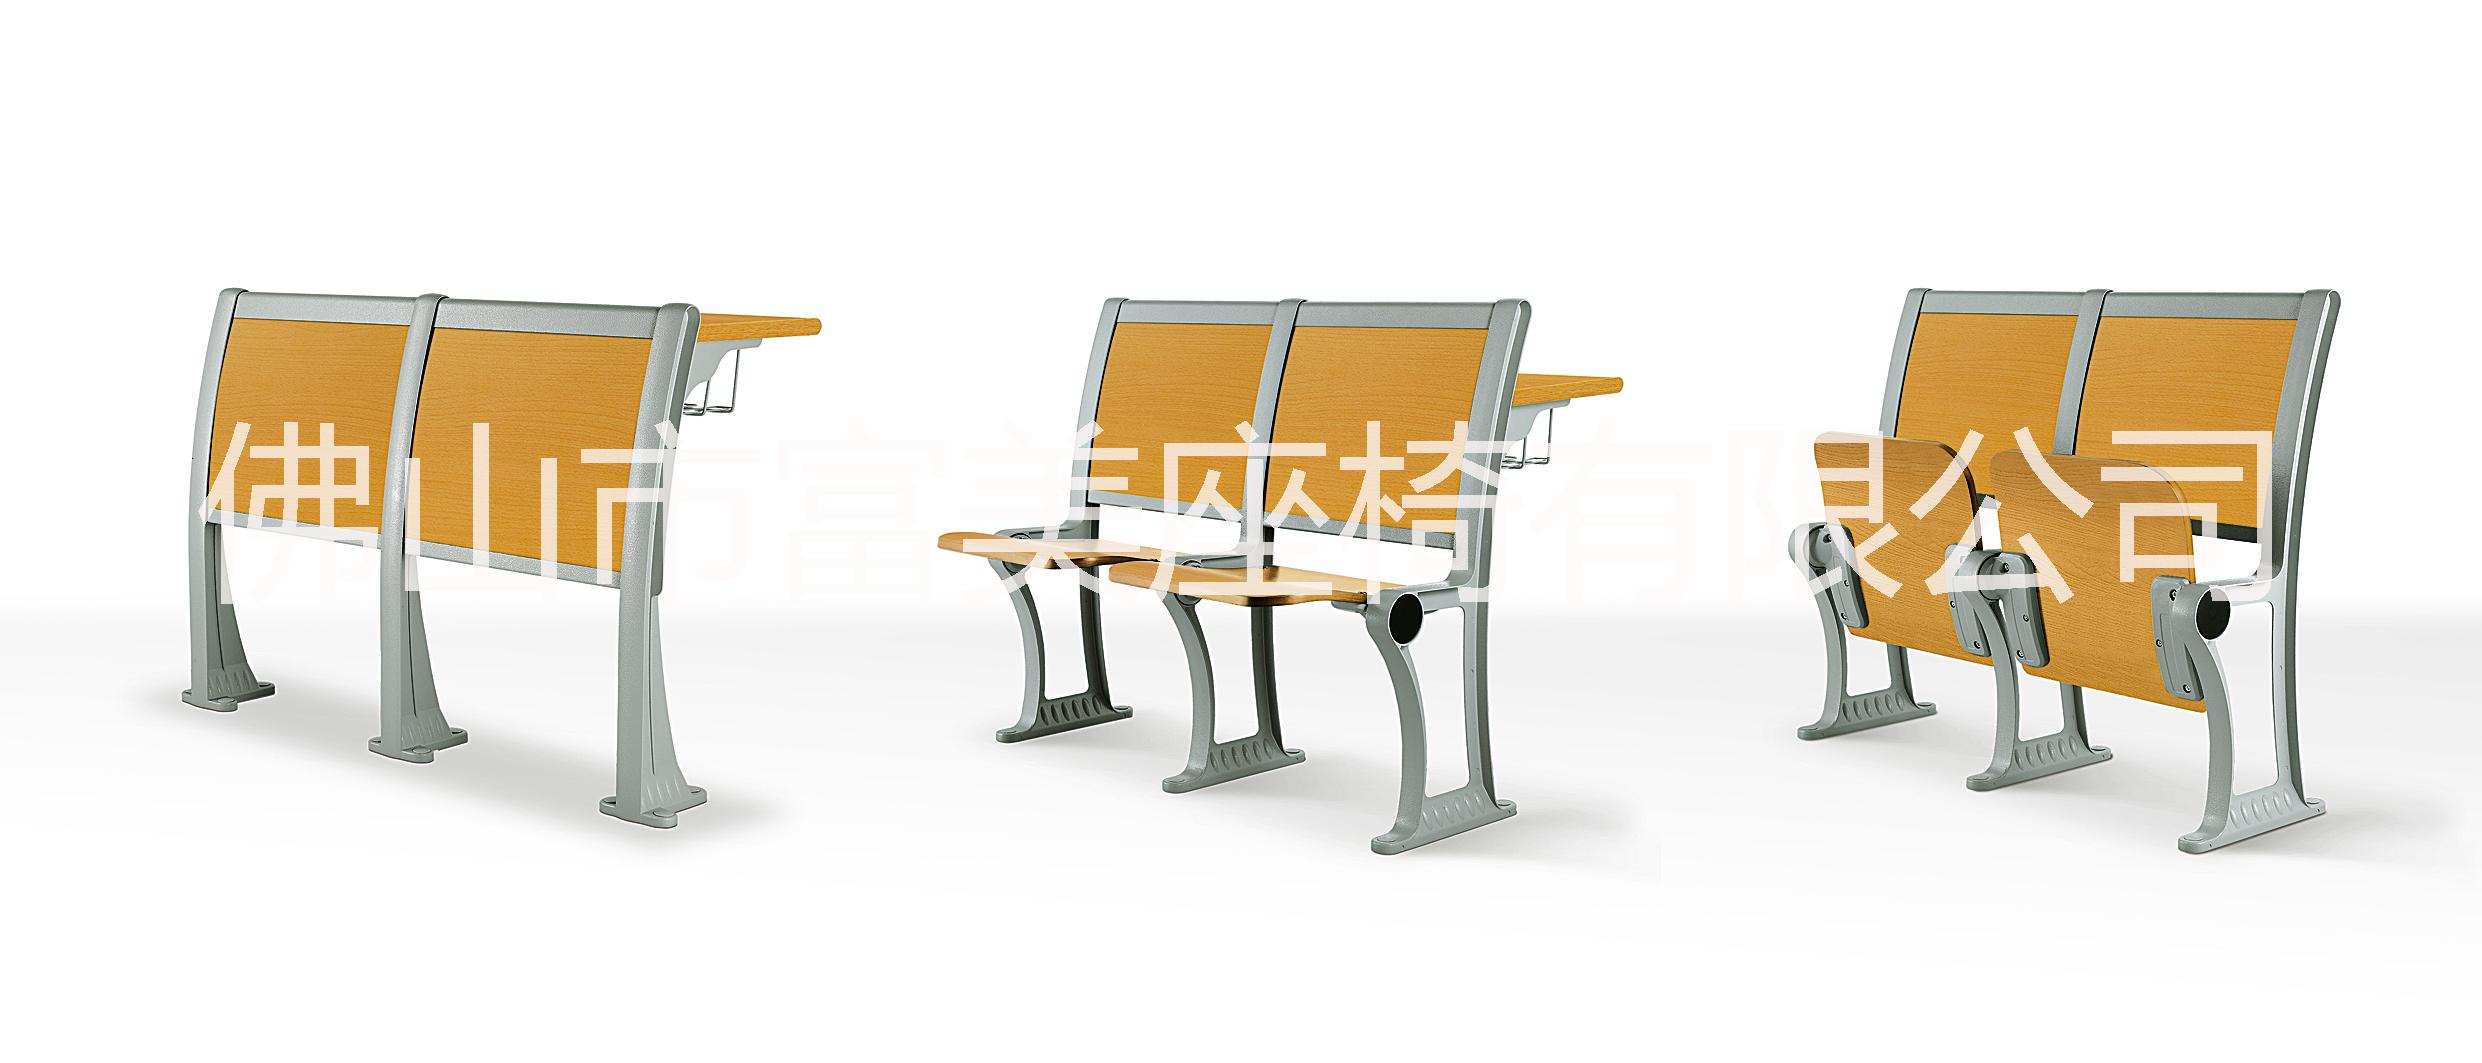 供应学生课桌椅、双人位课桌椅、阶梯教室排椅、钢木课桌椅